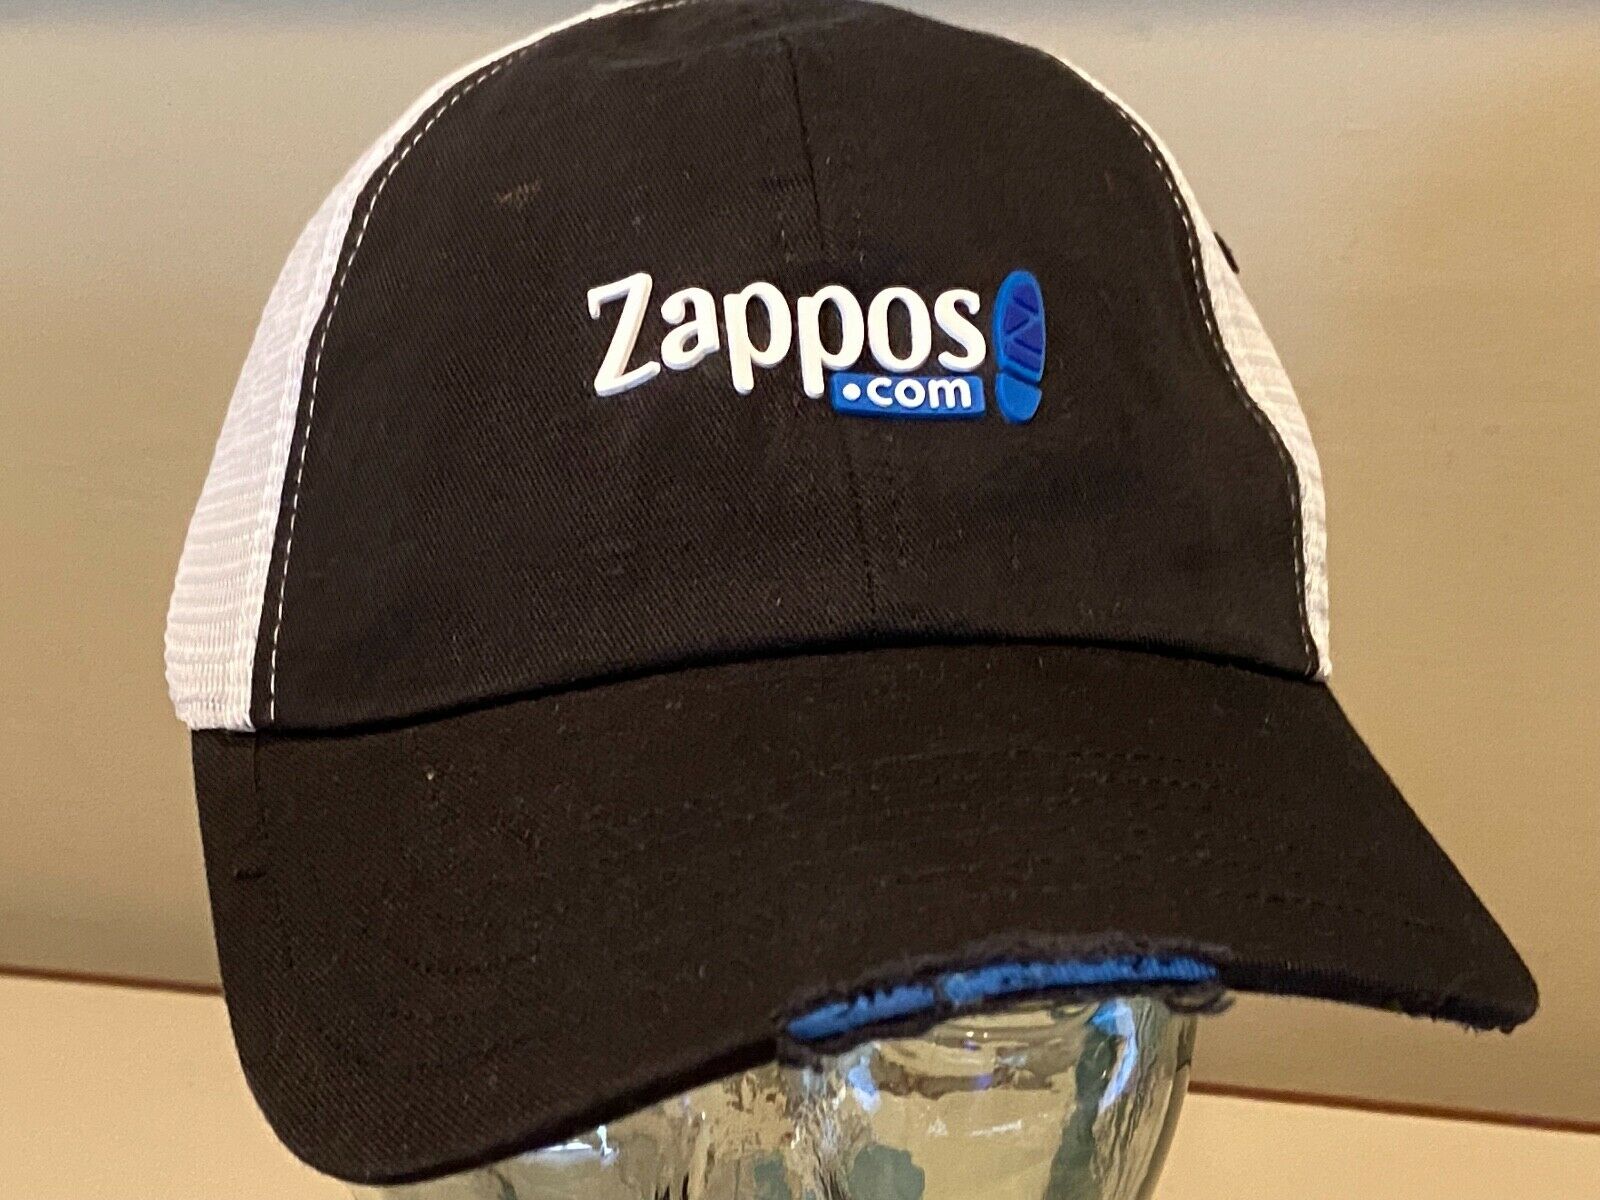 Zappos Online shoes Amazon Employee 1999 RARE Unique Hat Cap ~~ NEW